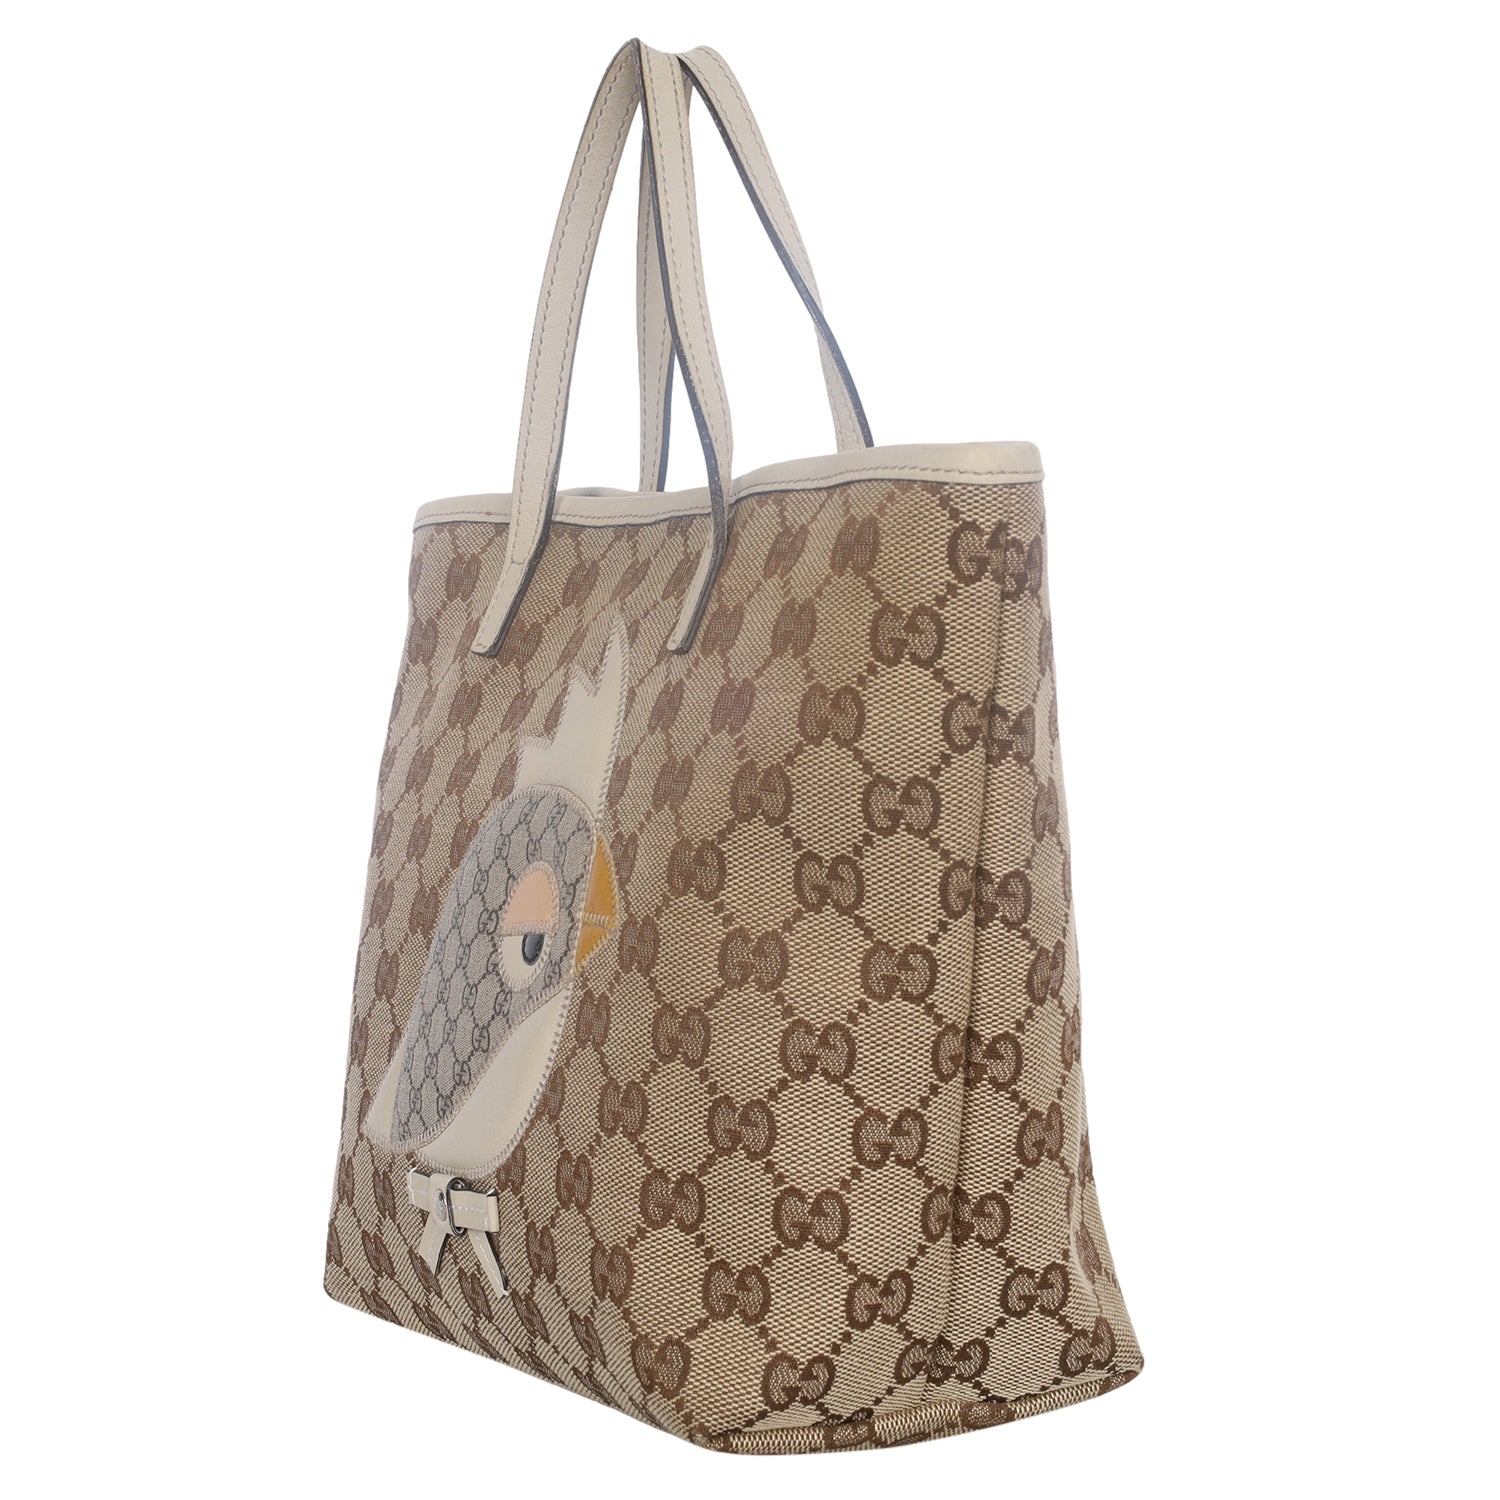 Gucci GG Supreme Web Dog Bag on SALE